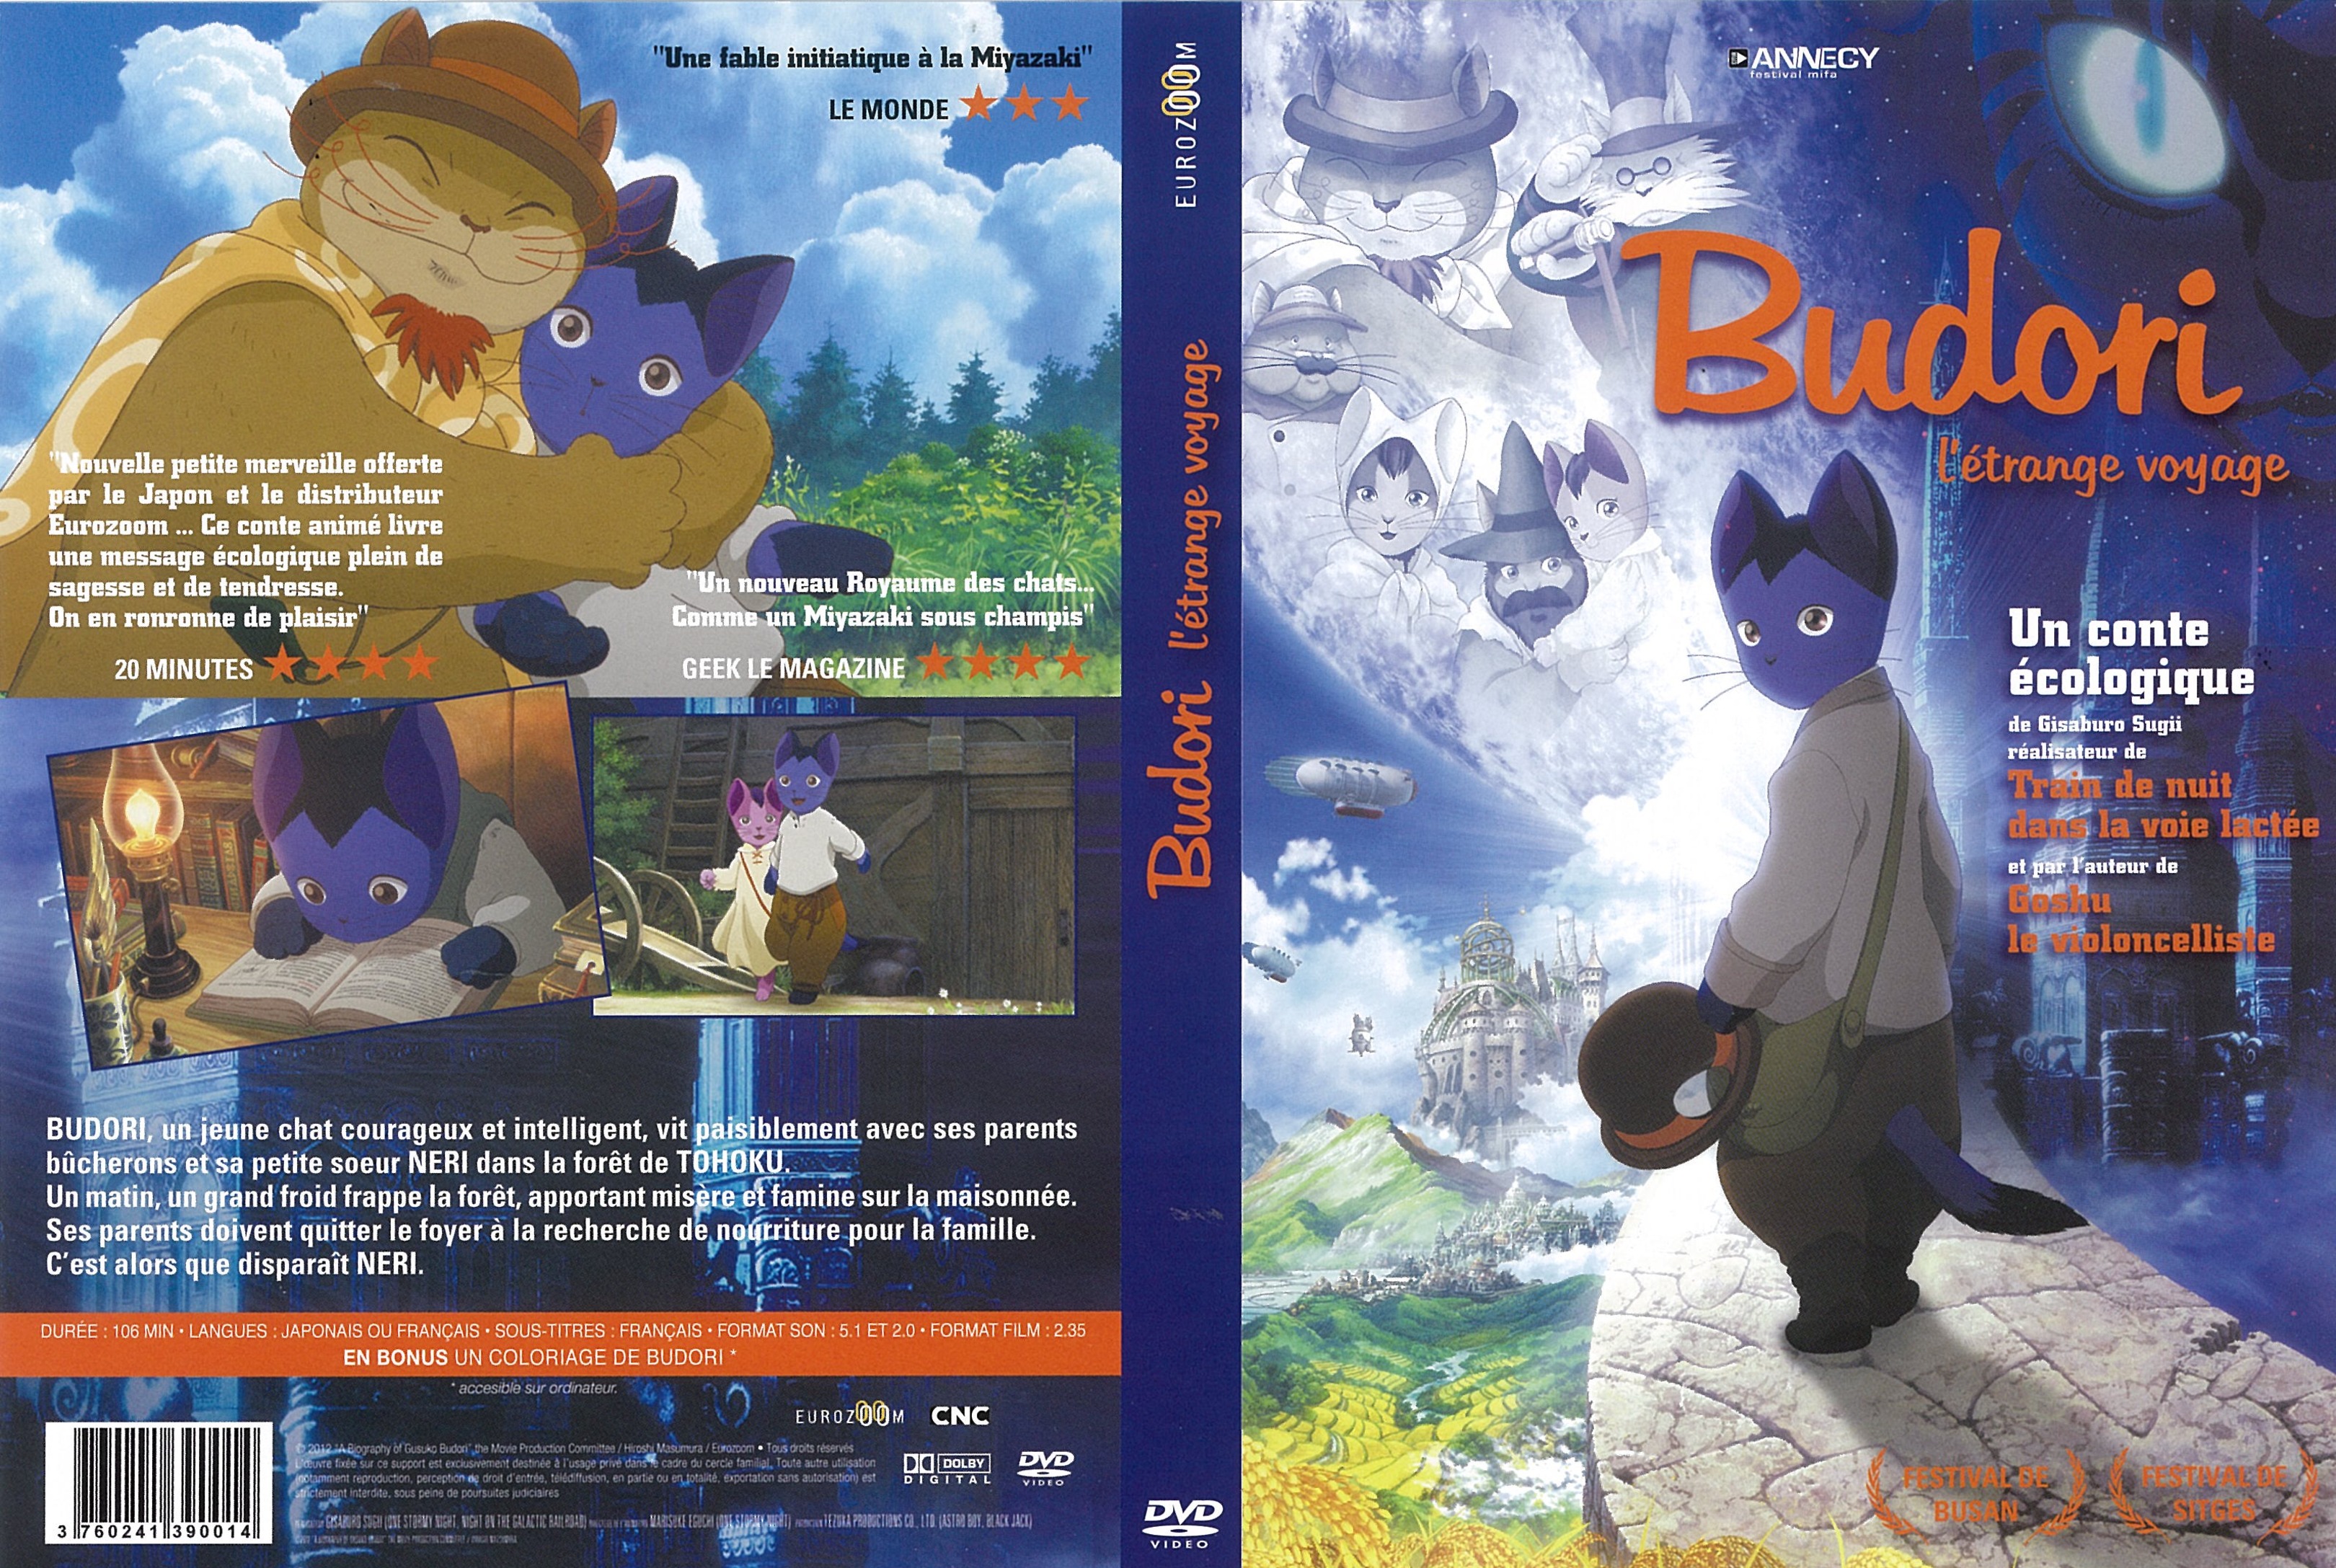 Jaquette DVD Budori, l